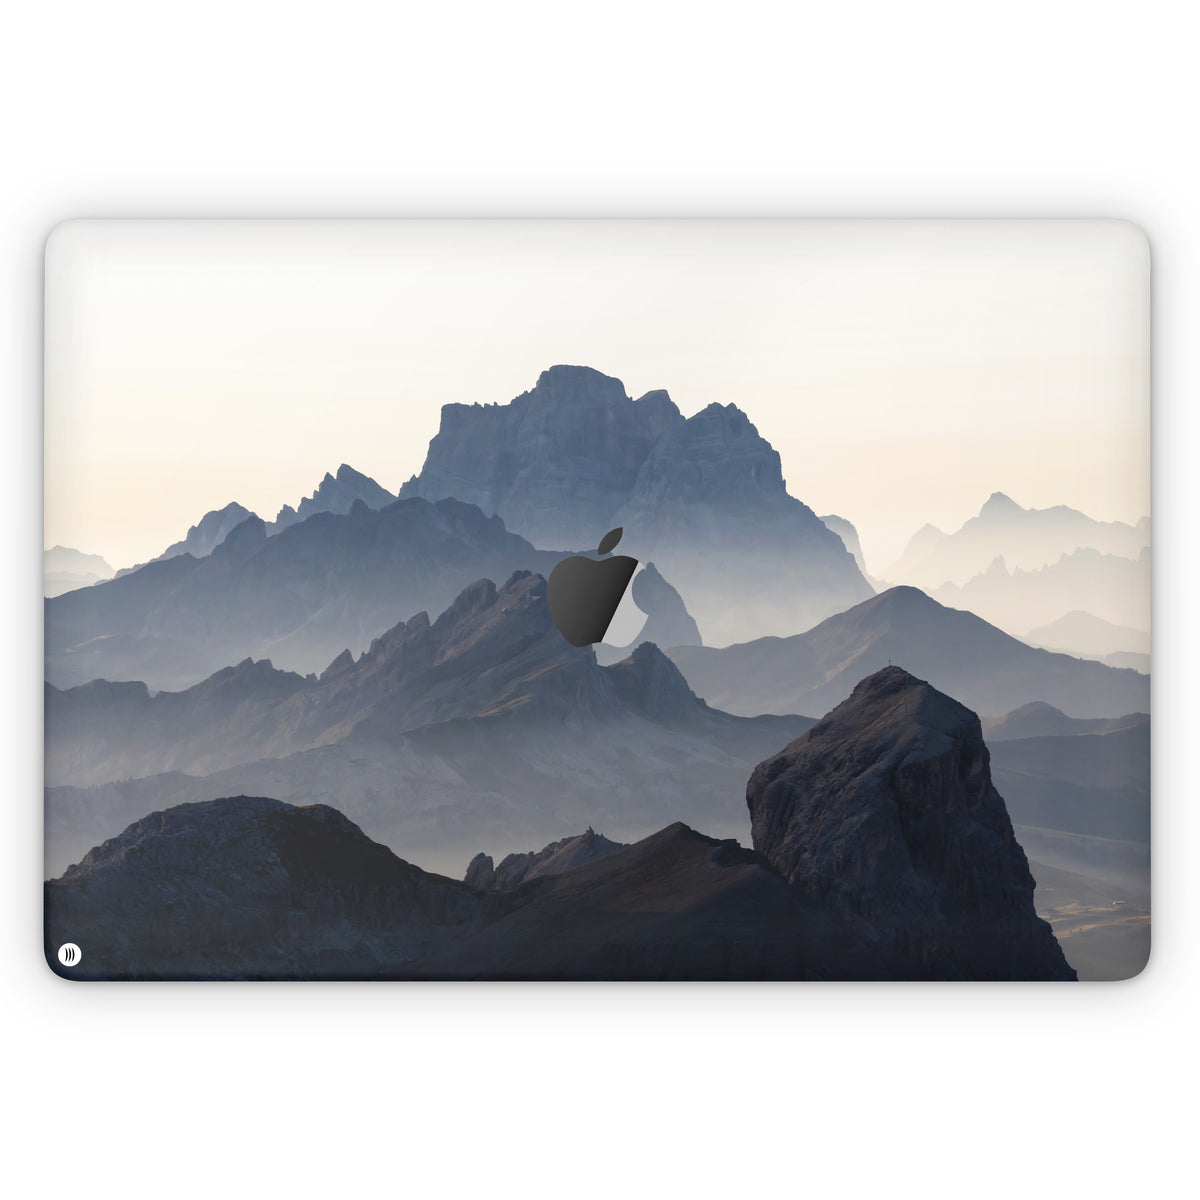 Summit (MacBook skin)